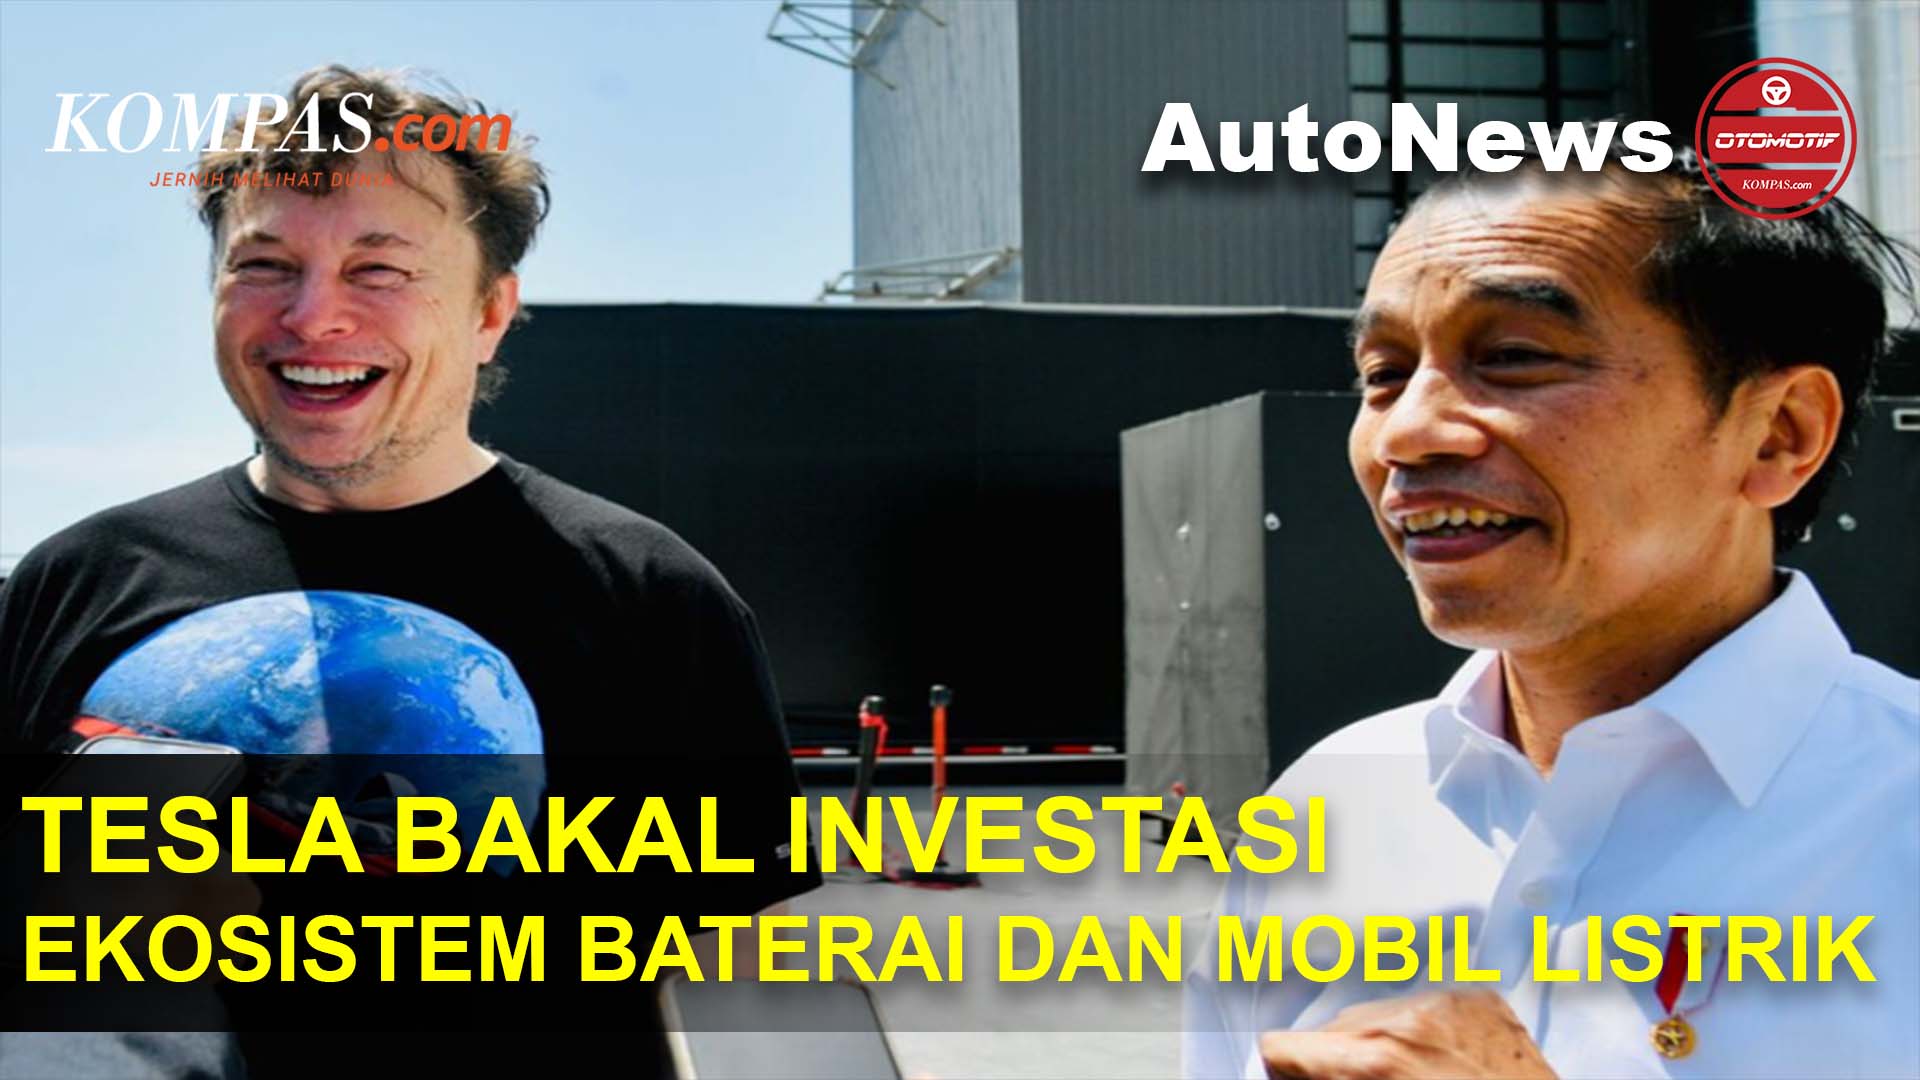 Pemerintah Sebut Tesla Bakal Investasi Ekosistem Baterai dan Mobil Listrik di Indonesia